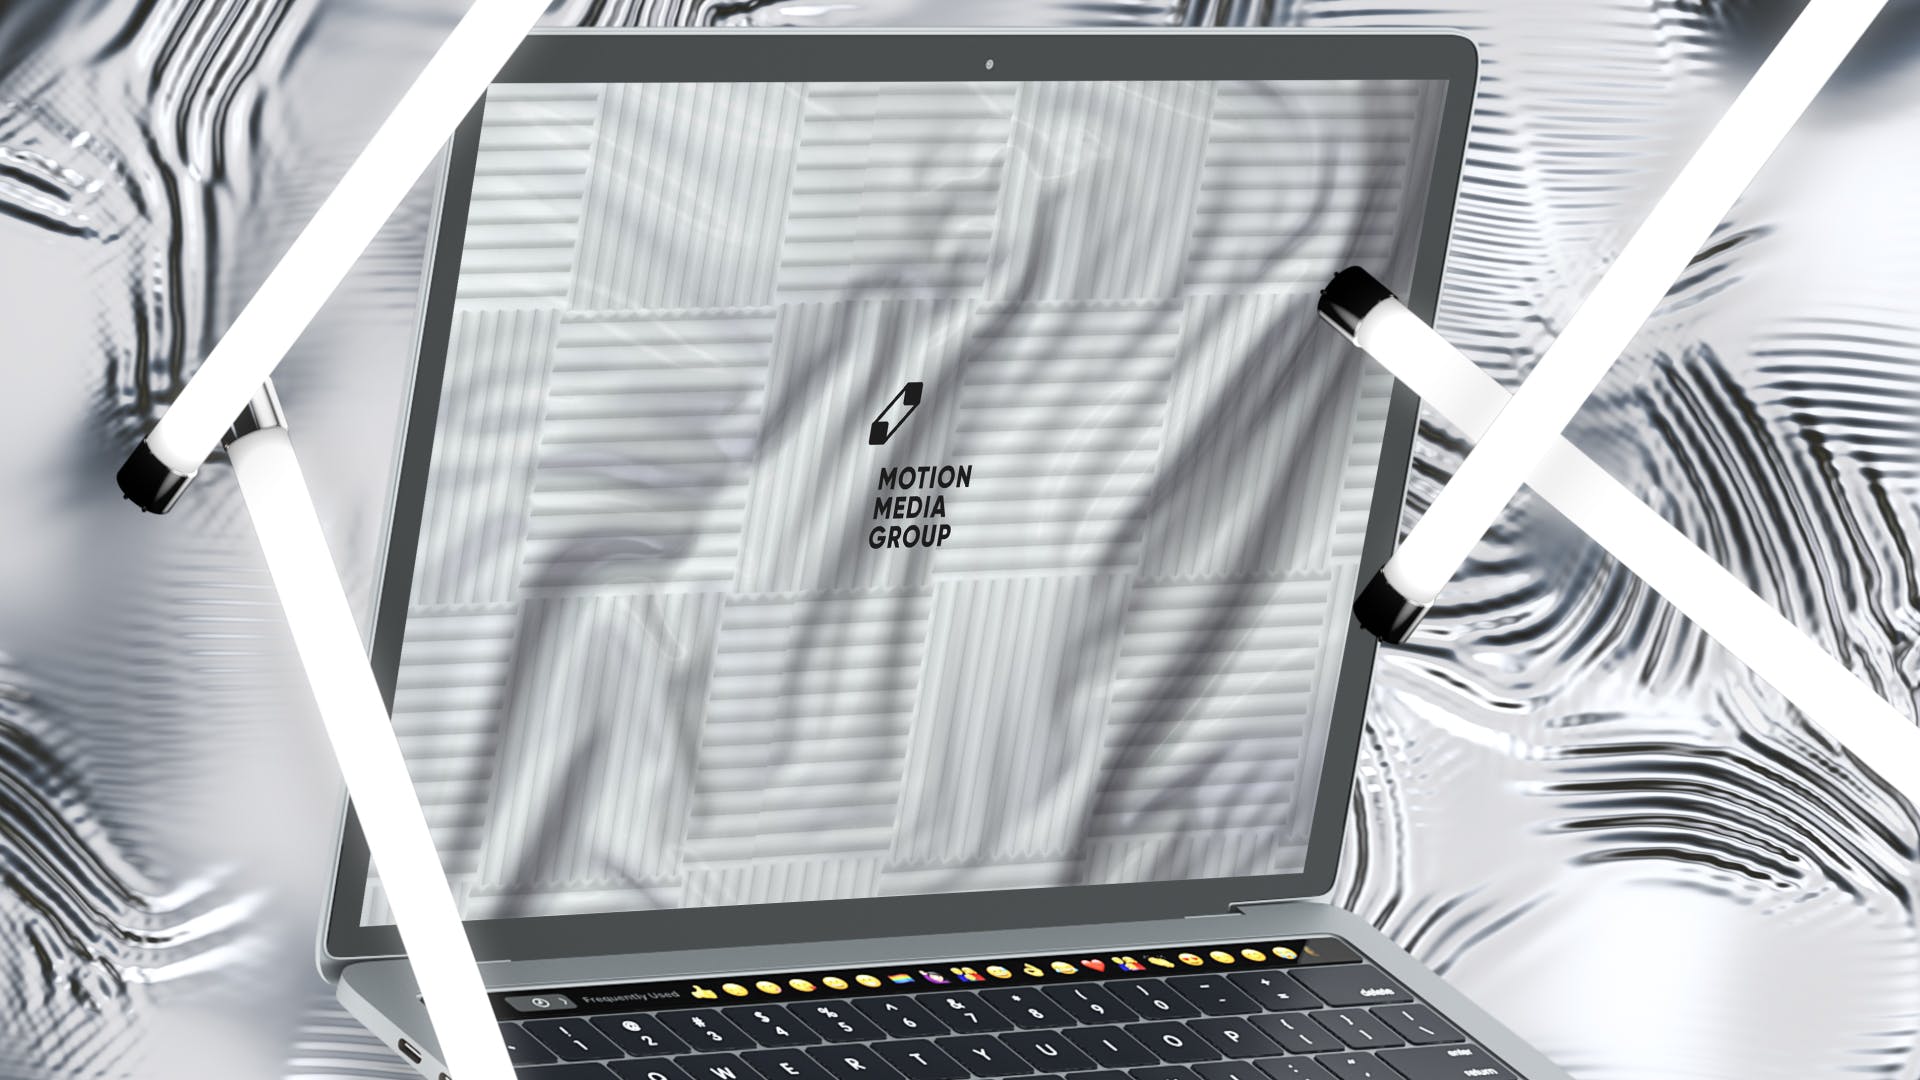 优雅时尚风格3D立体风格笔记本电脑屏幕预览素材库精选样机 10 Light Laptop Mockups插图(6)